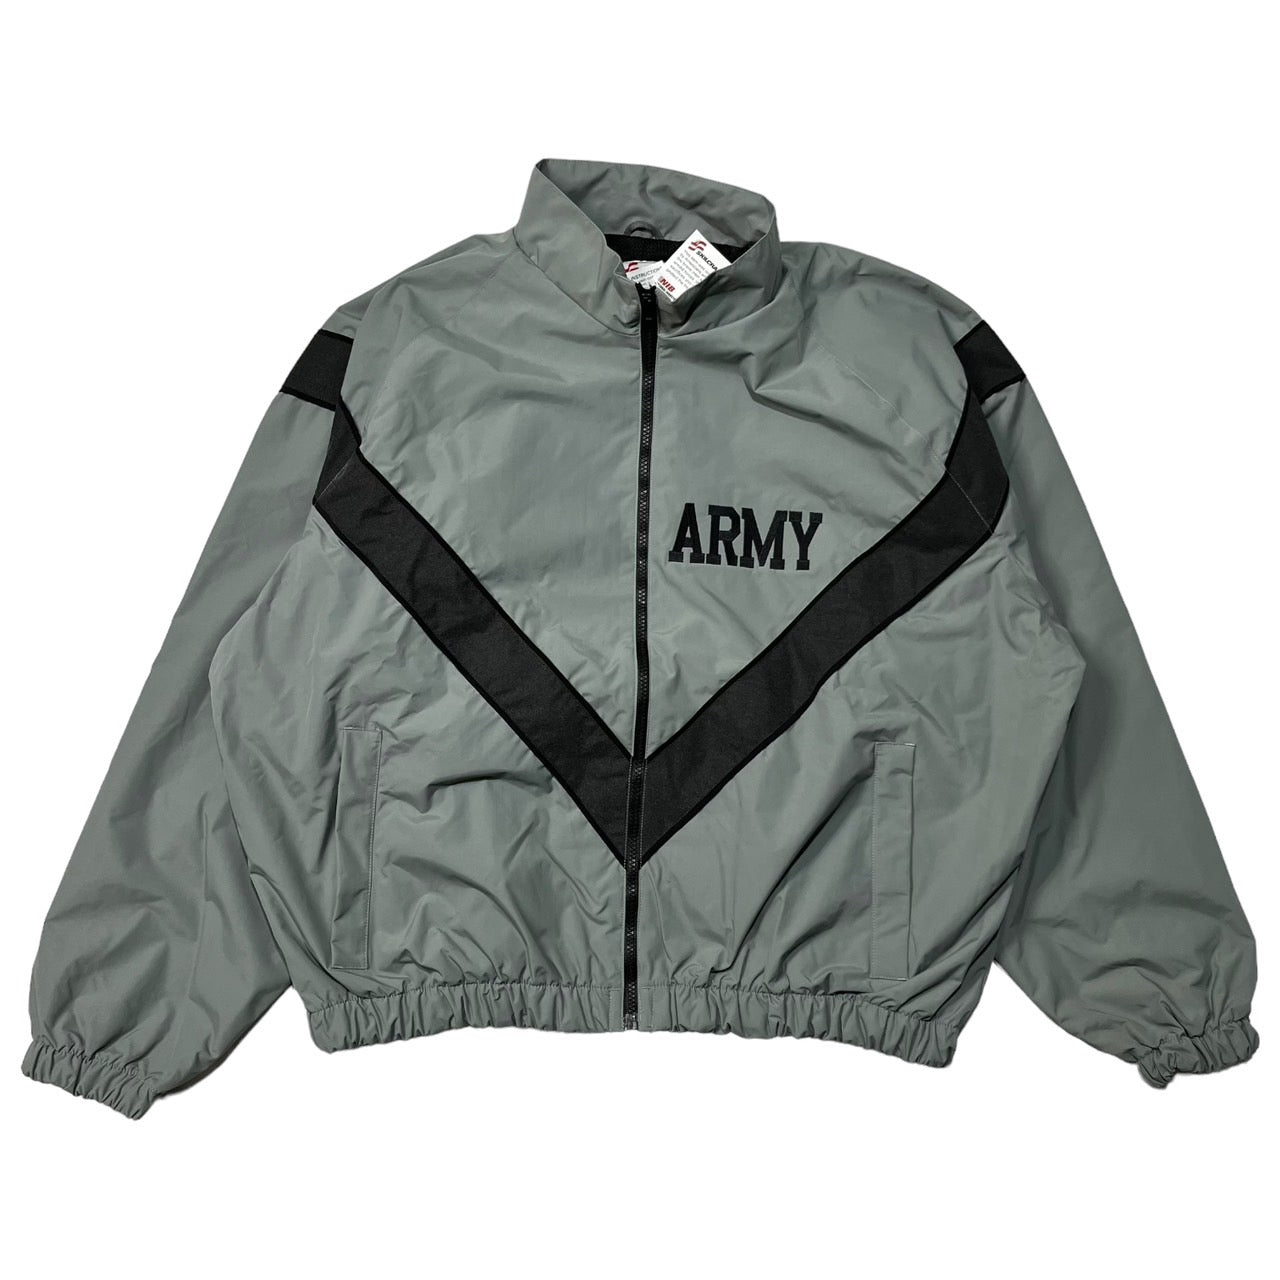 US AMRY(アメリカ軍) TRAINING JACKET/トレーニングジャケット 